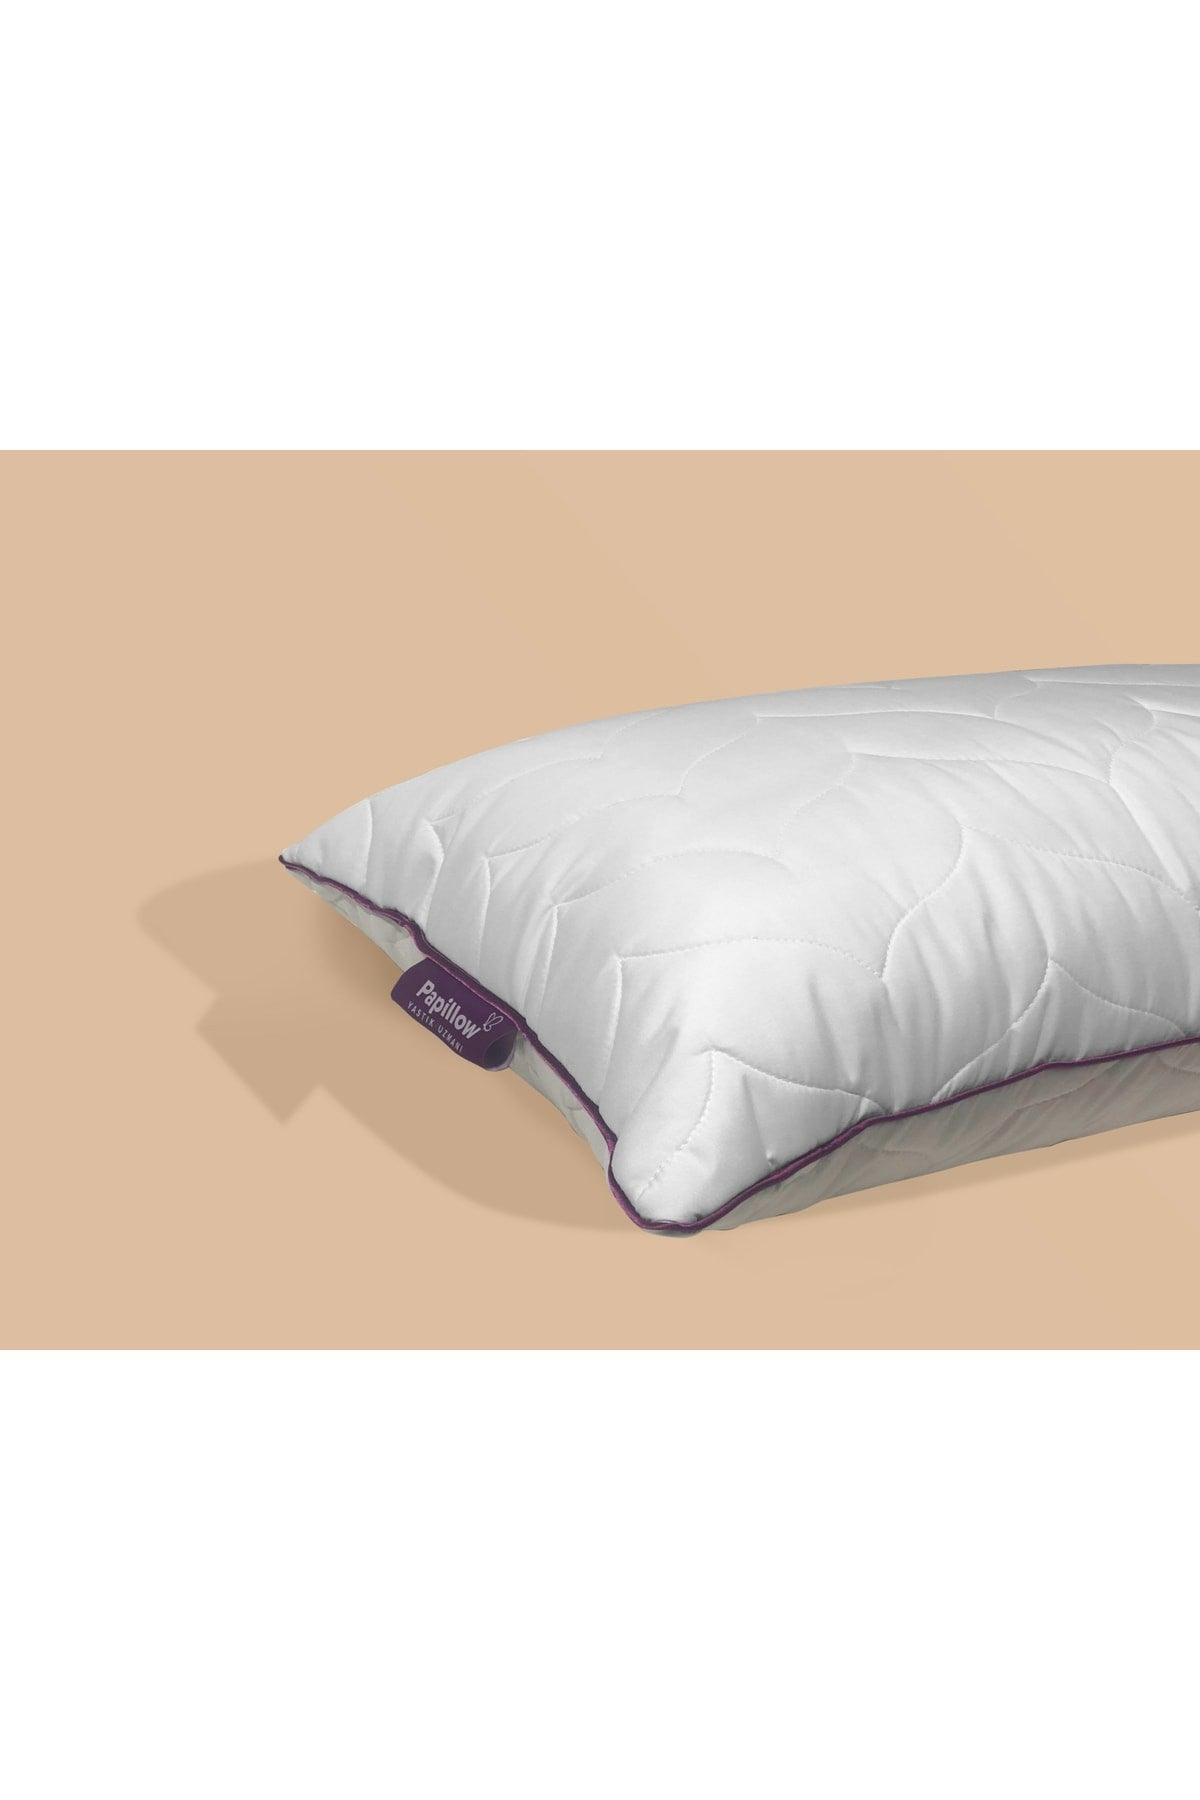 Luxury Aloe Vera Pillow 50*70 With Mattress